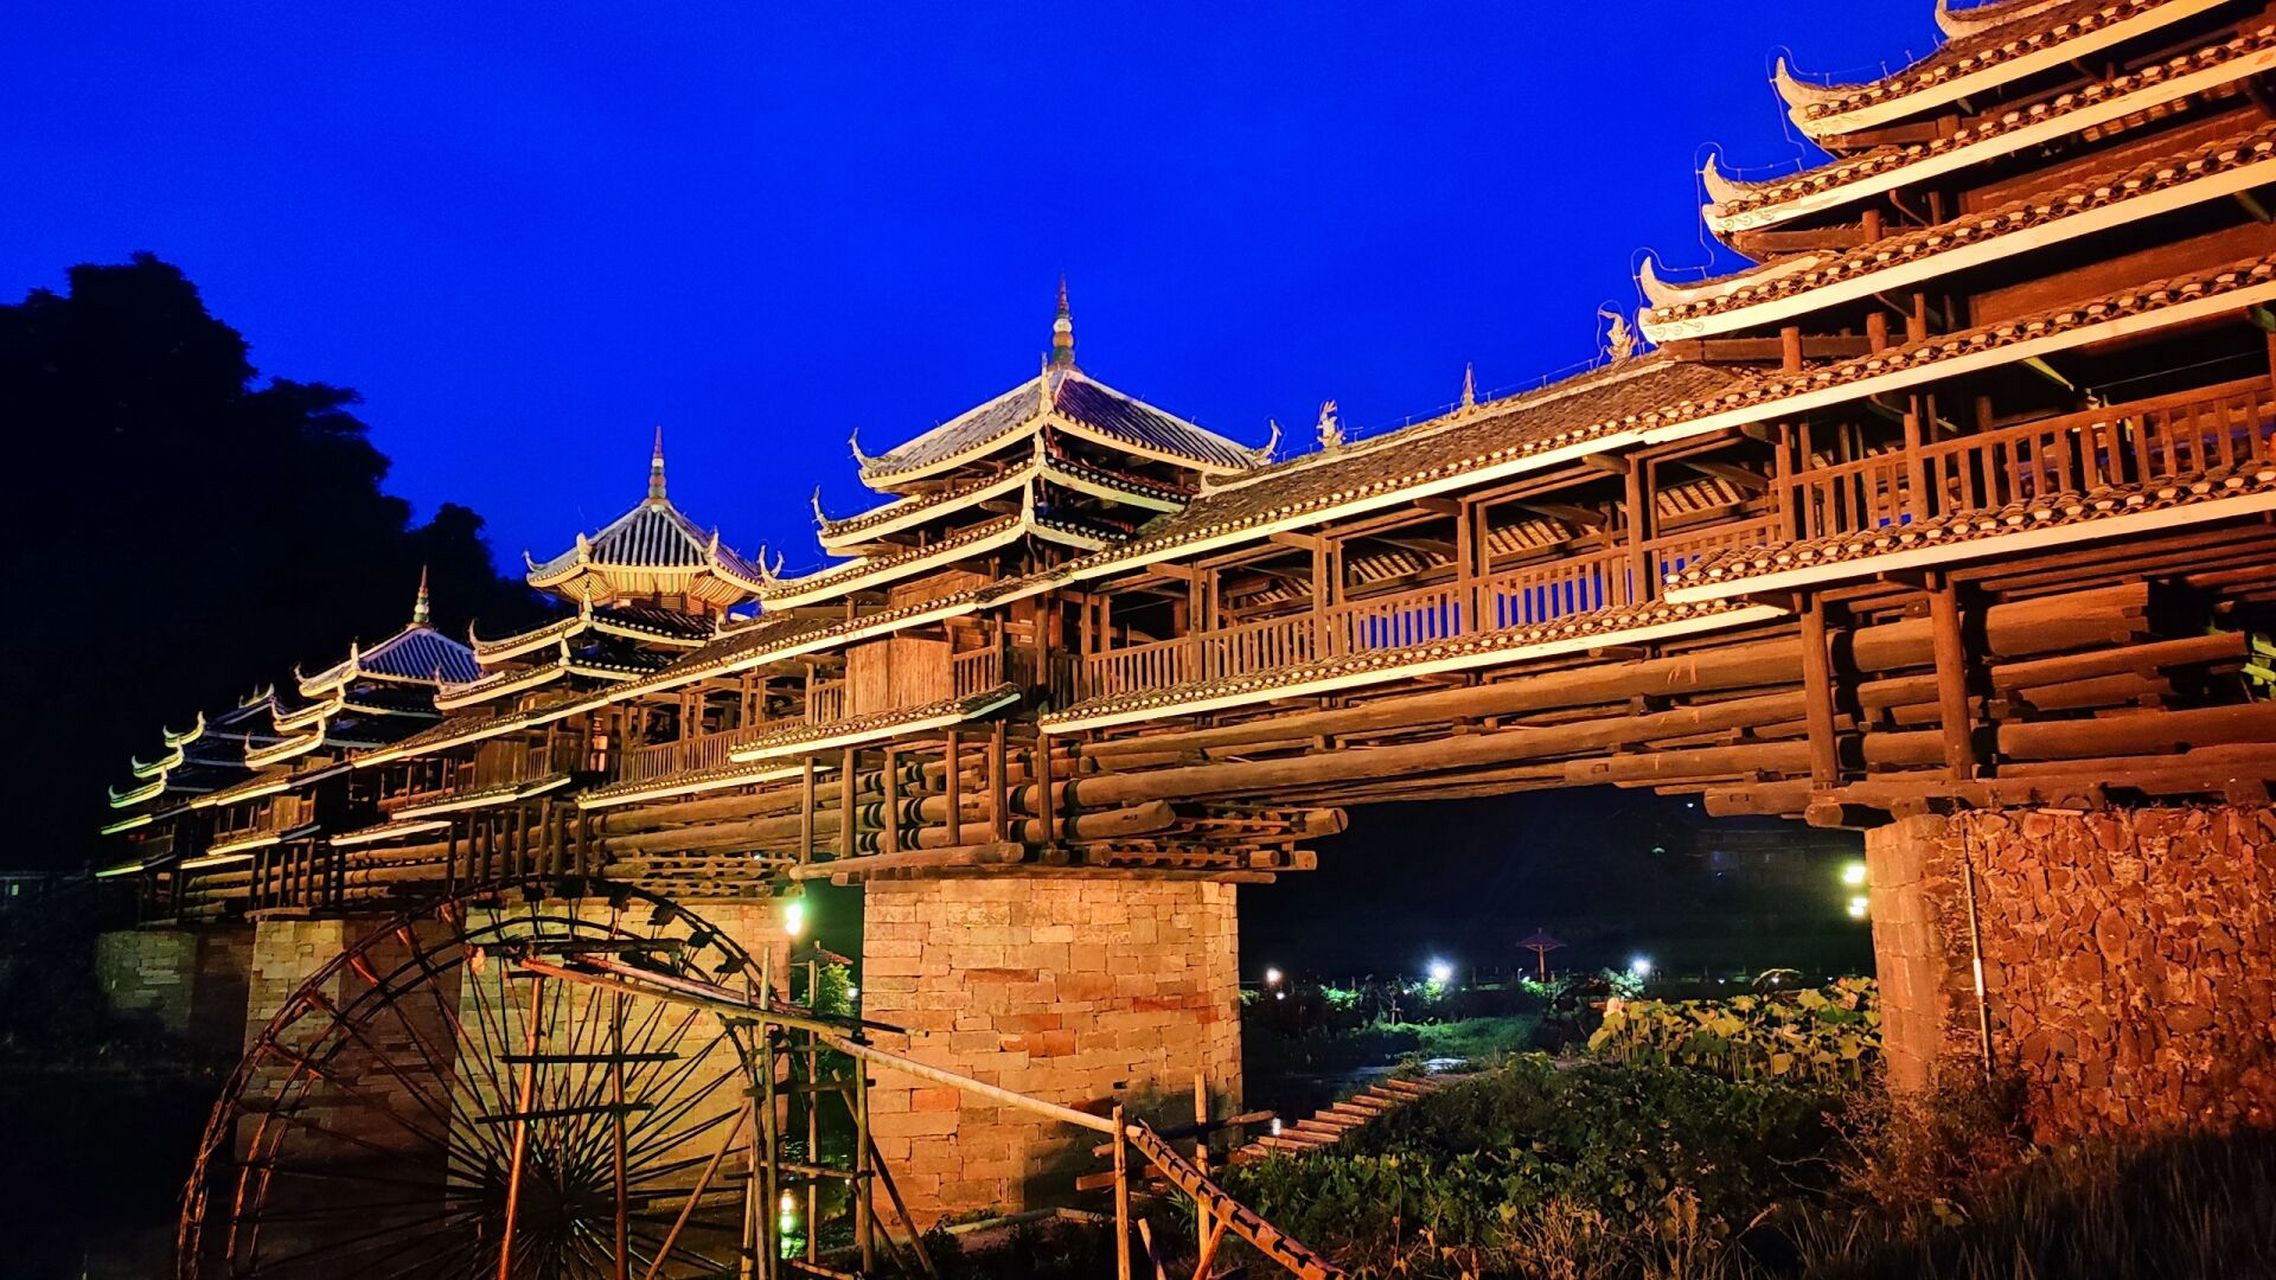 柳州最大的风雨桥图片